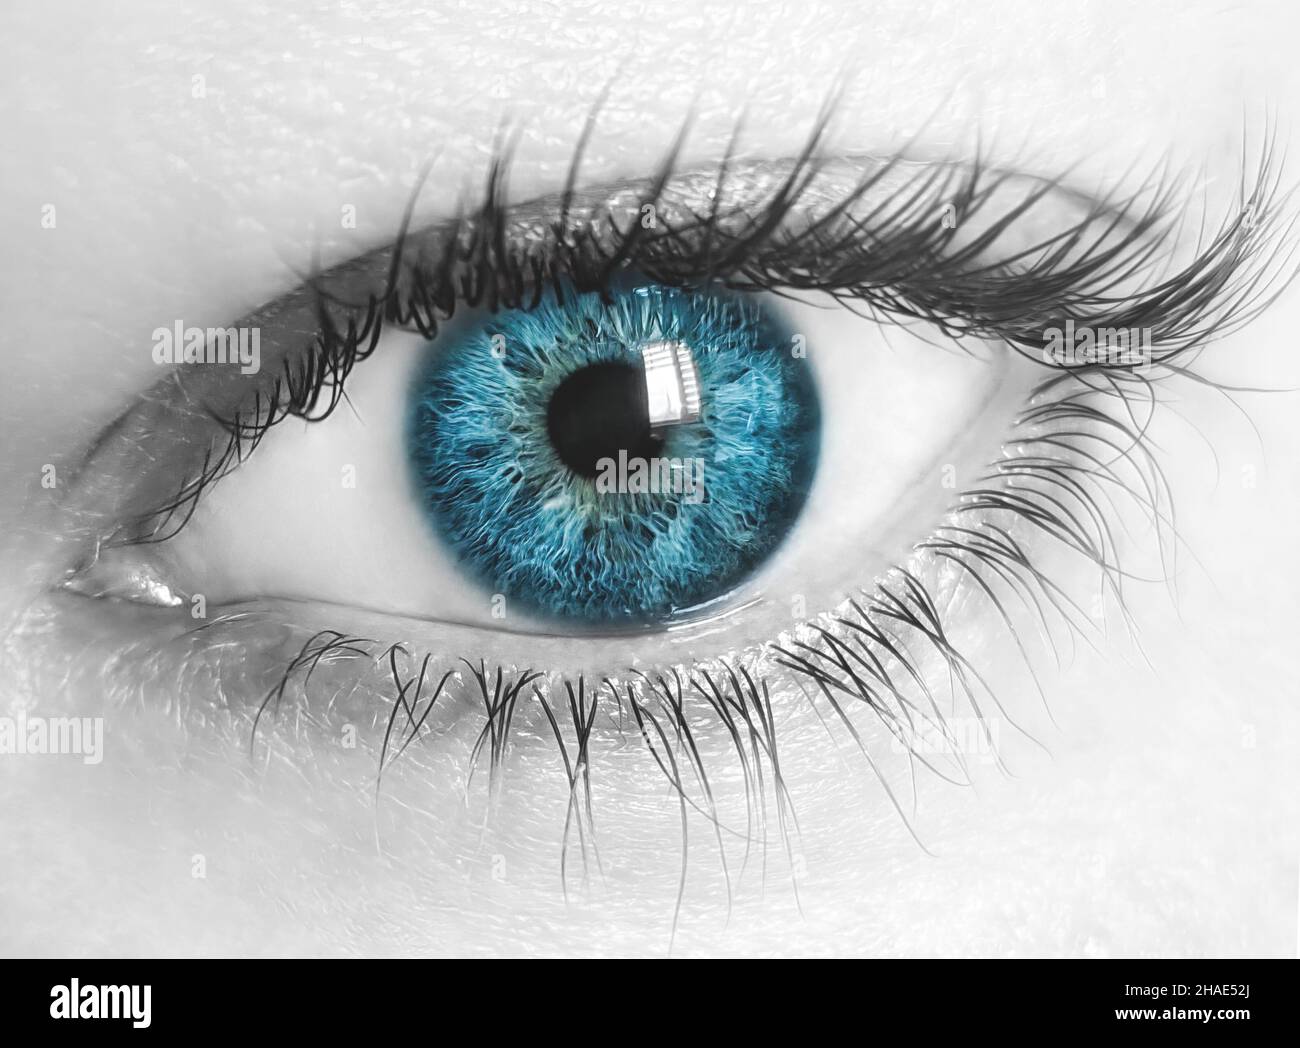 macro imagen del ojo humano con iris azul y piel desaturada. Vista de primer plano Foto de stock